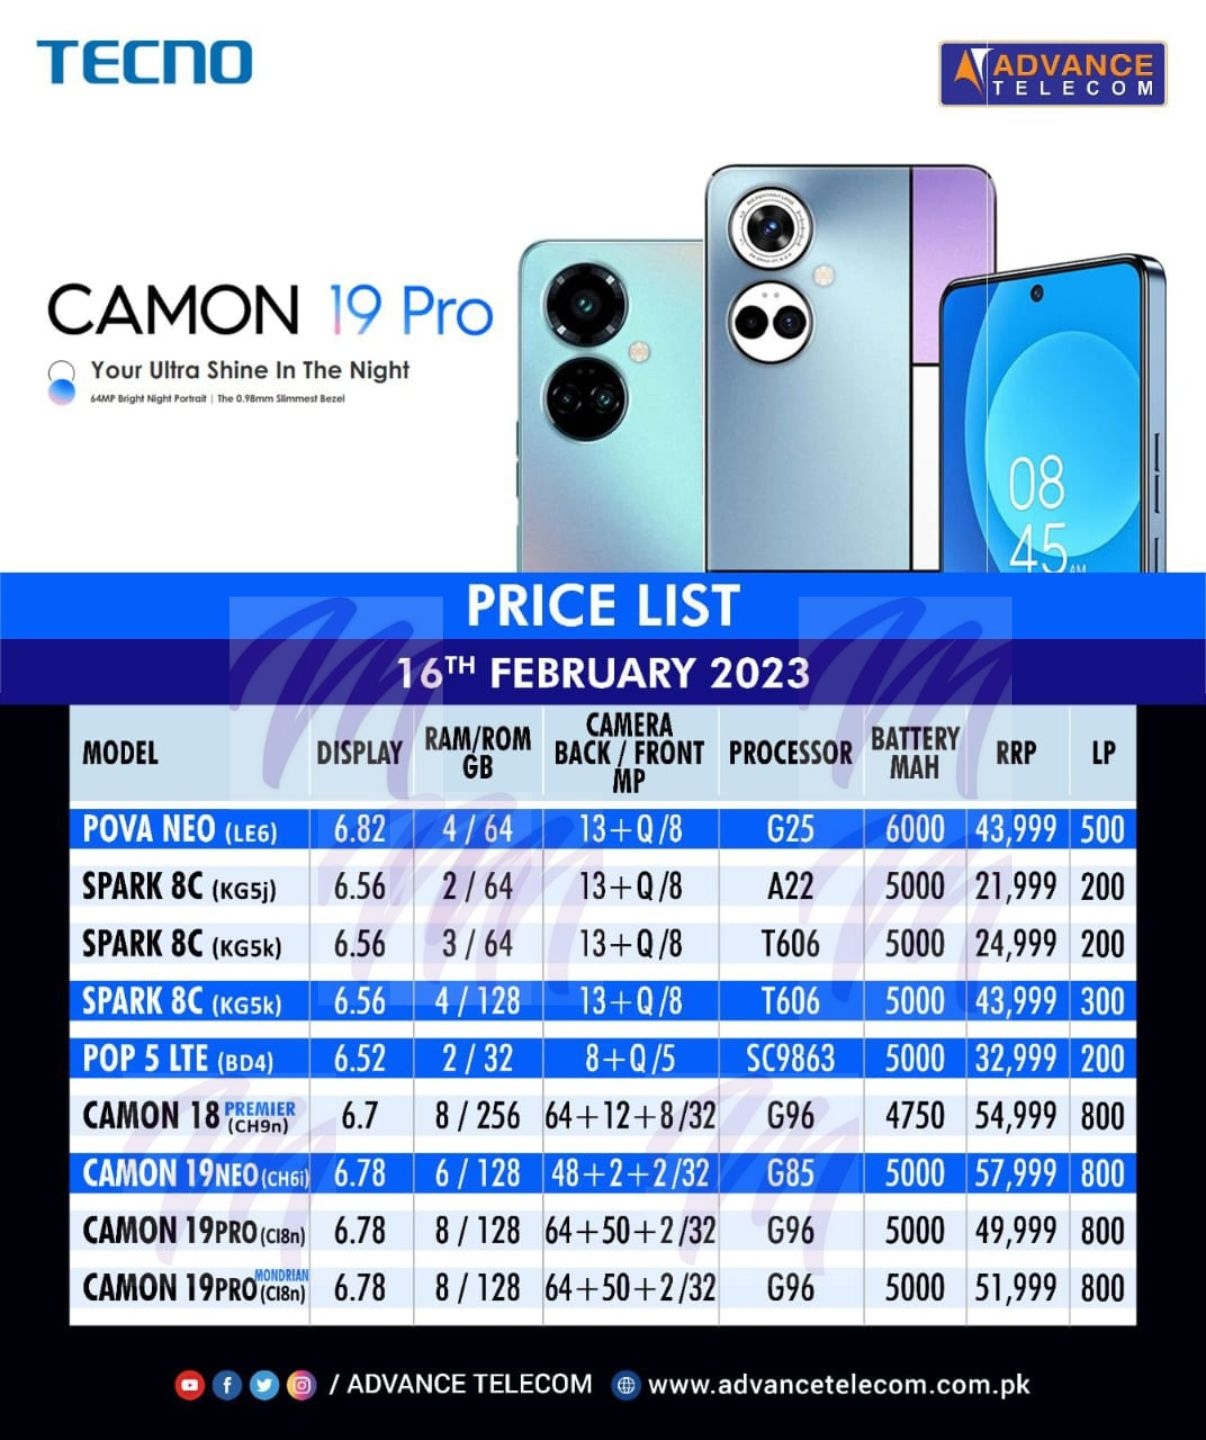 Tecno Dealer Price List - February 2023